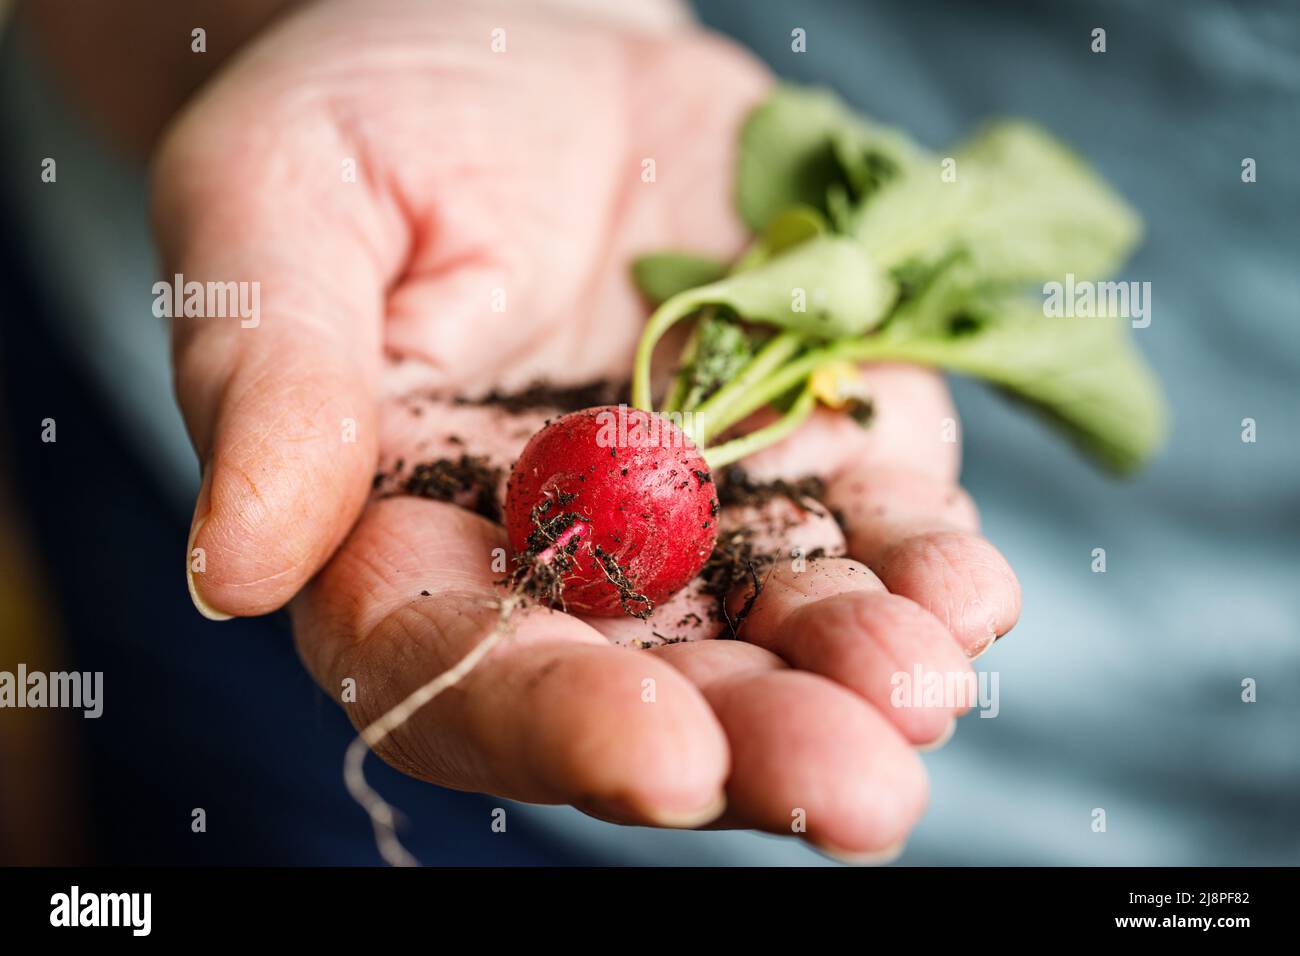 Female hand holding a radish Stock Photo